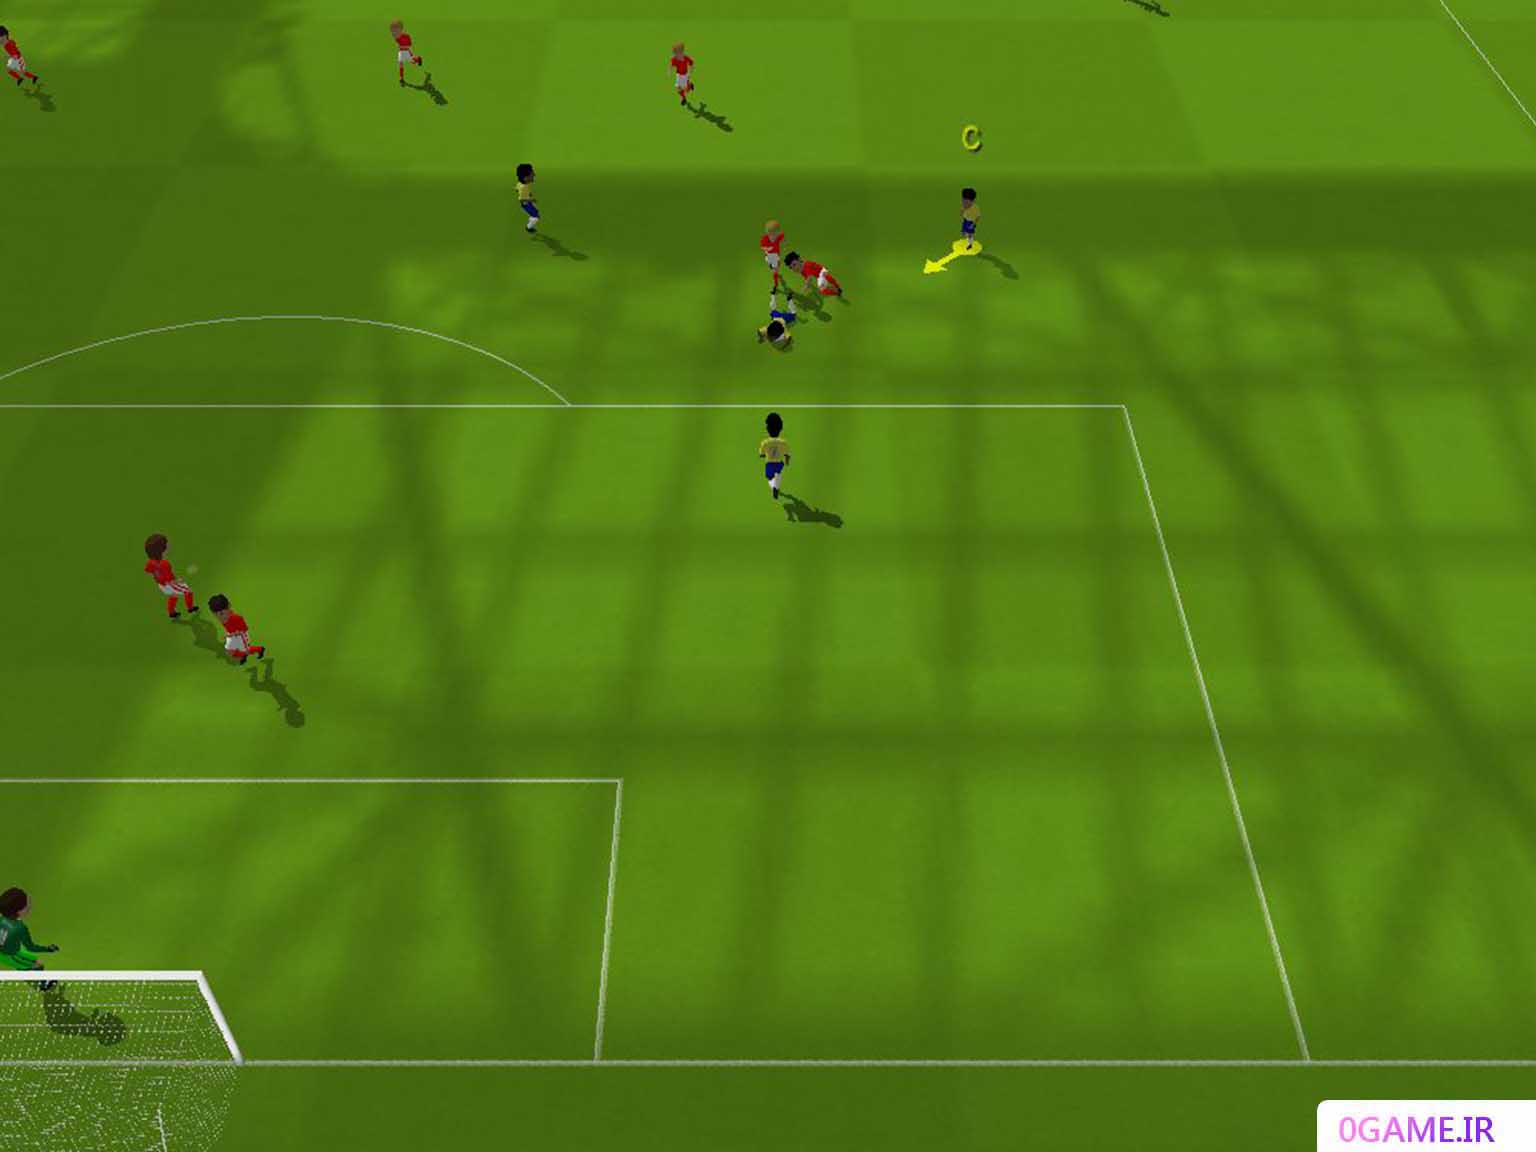 دانلود بازی فوتبال معقول (Sensible Soccer 2006) نسخه کامل برای کامپیوتر